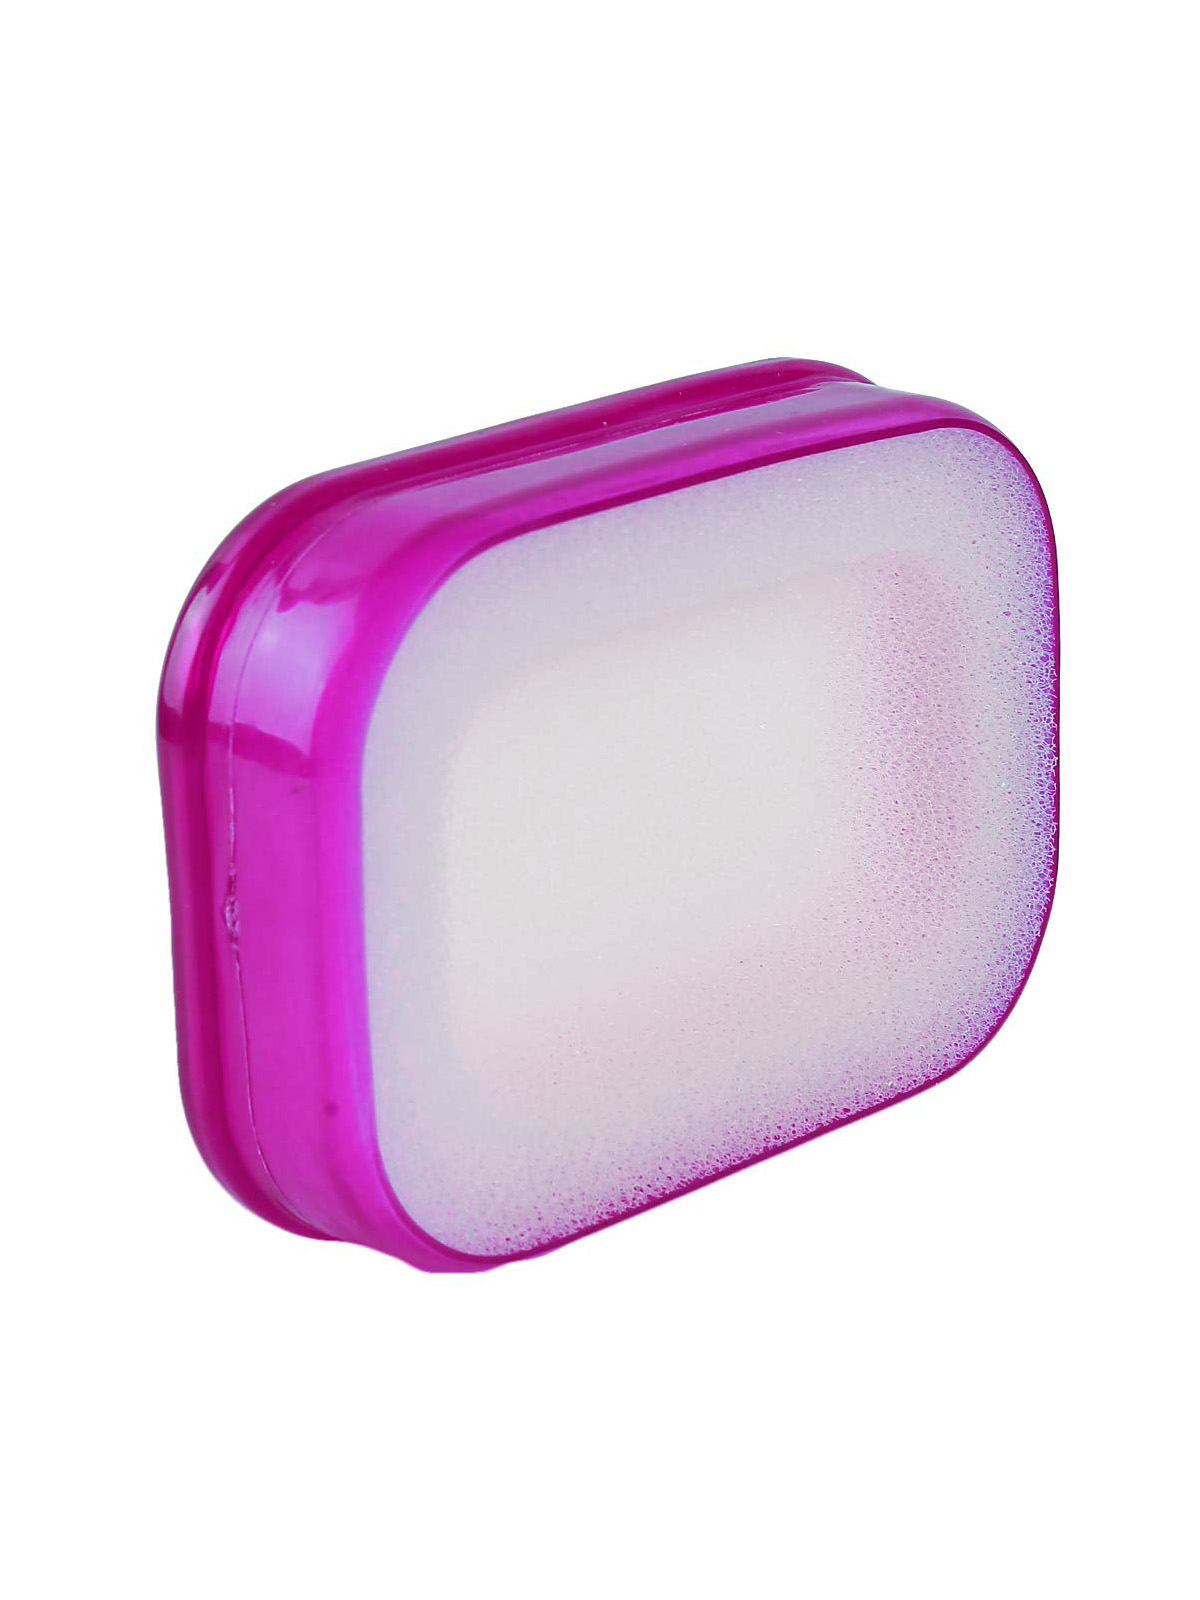 фото Мыльница Blonder Home Мультифункциональная губка мыльница в пластиковой коробке, мыльница с губкой поролоновой (фиол.), BH-ASH-05, ПВХ (поливинилхлорид), Пластик